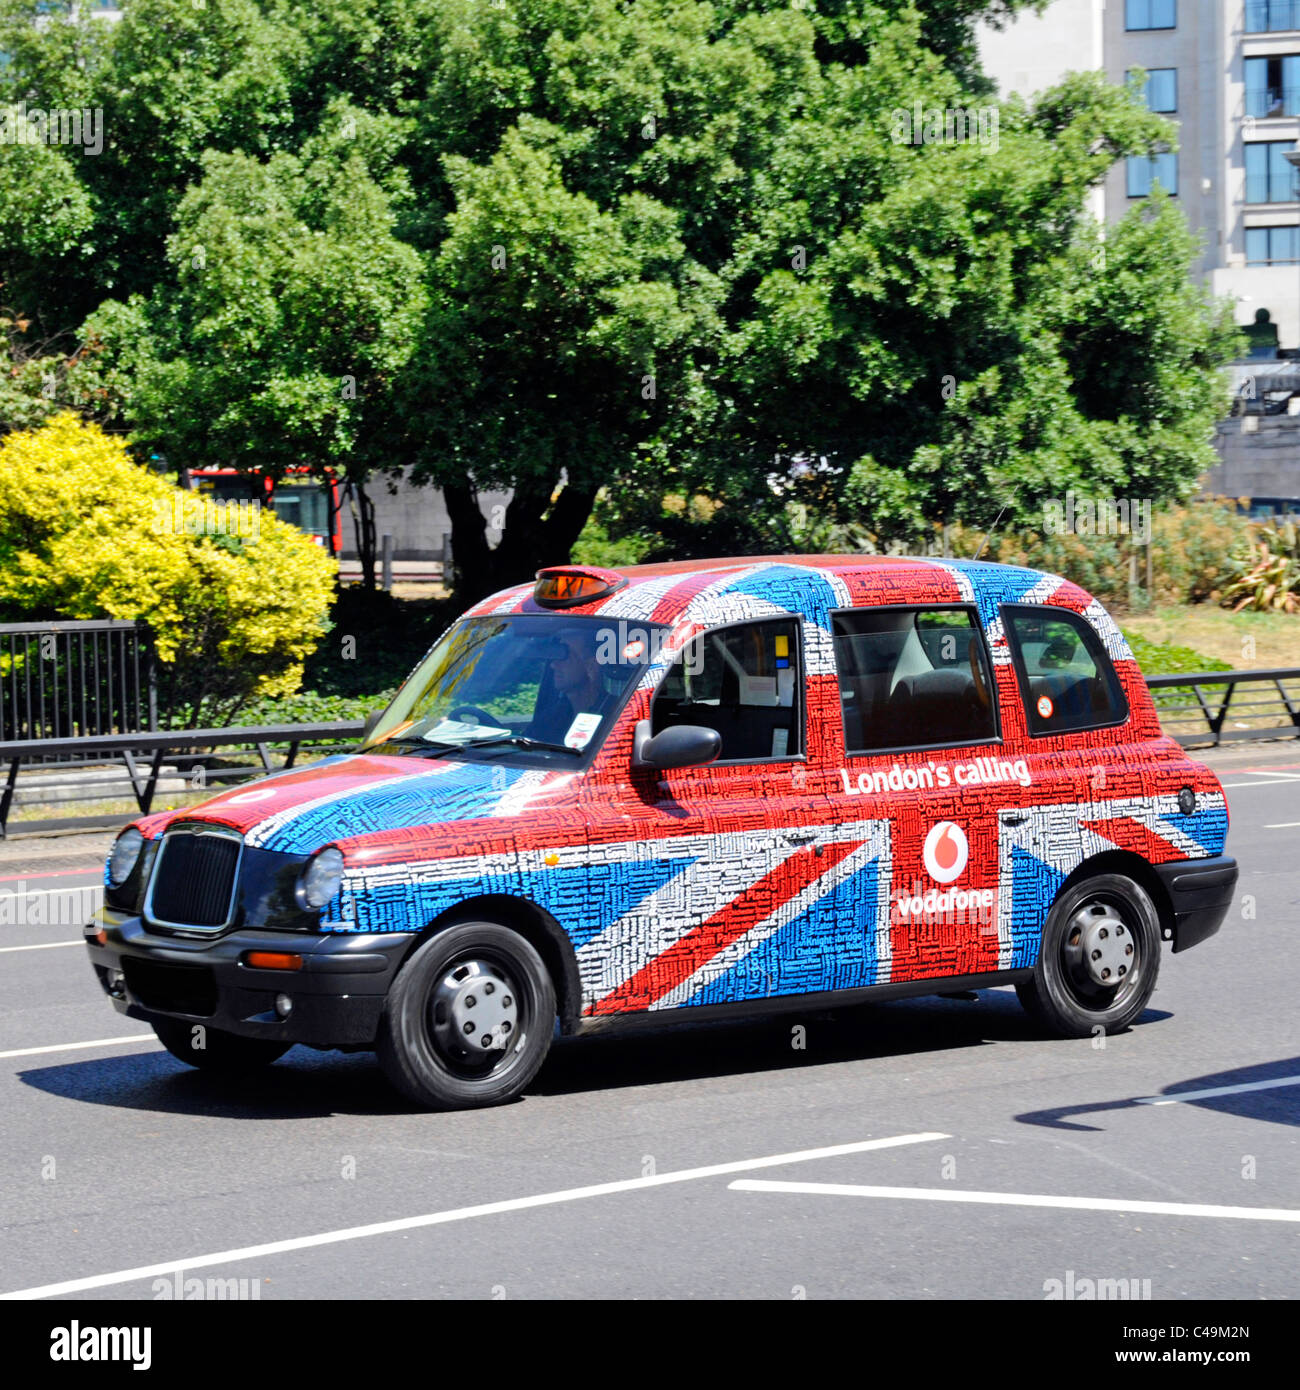 Straße Szene Seitenansicht schwarz Taxi Taxi vorübergehend bedeckt Vodafone London Calling Union Jack Flagge & Text Tag Wort Wolke Werbegrafik England UK Stockfoto